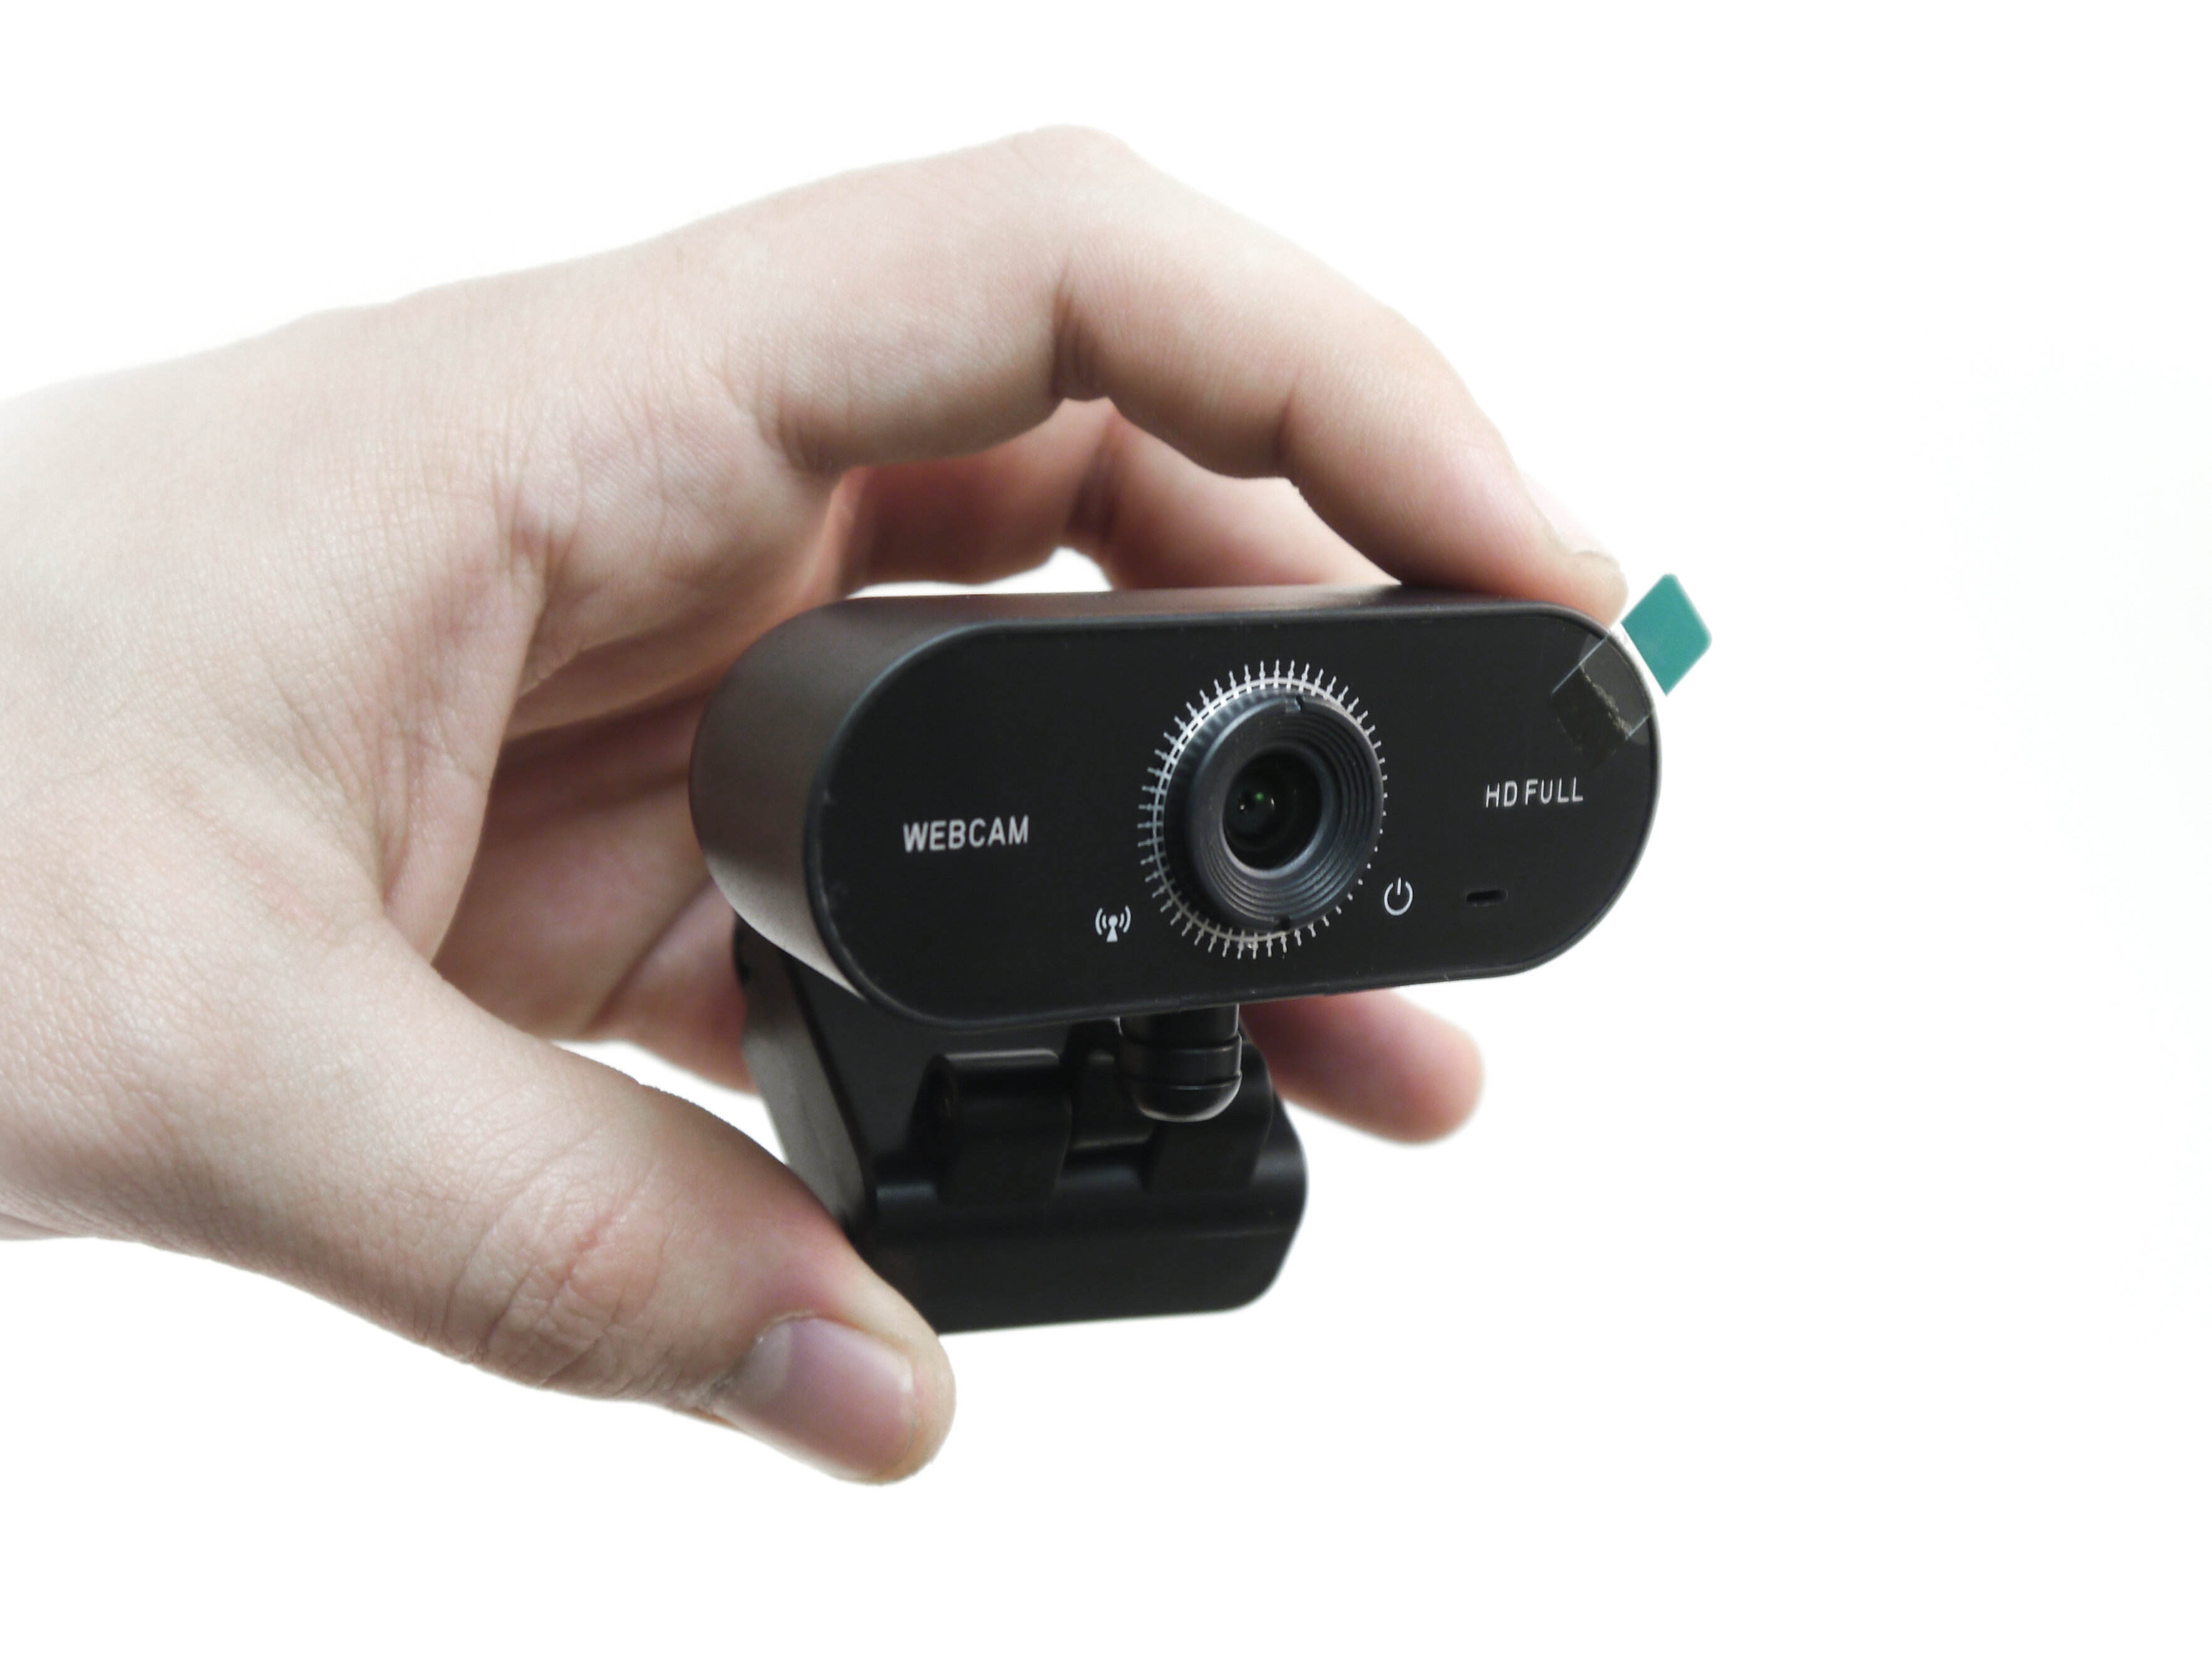 Web камера HDcom Livecam W16-FHD - веб камера 1920*1080 / камеры для блоггеров недорогие. Частота кадров - 30 к/сек